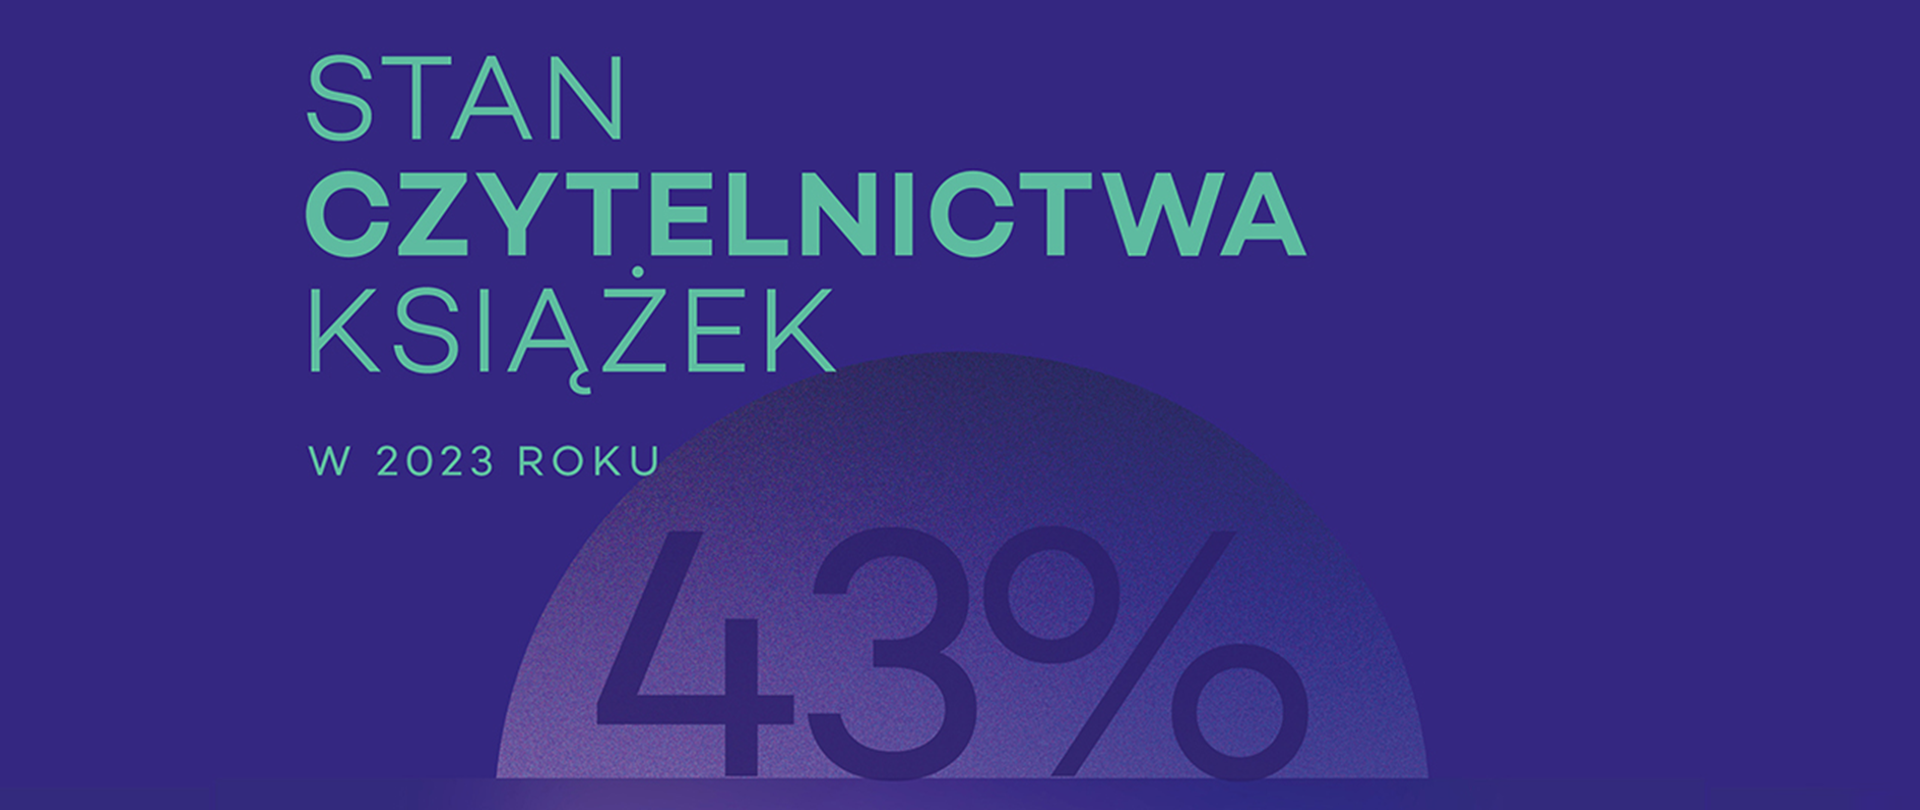 Najlepszy wynik czytelnictwa w Polsce od 10 lat!